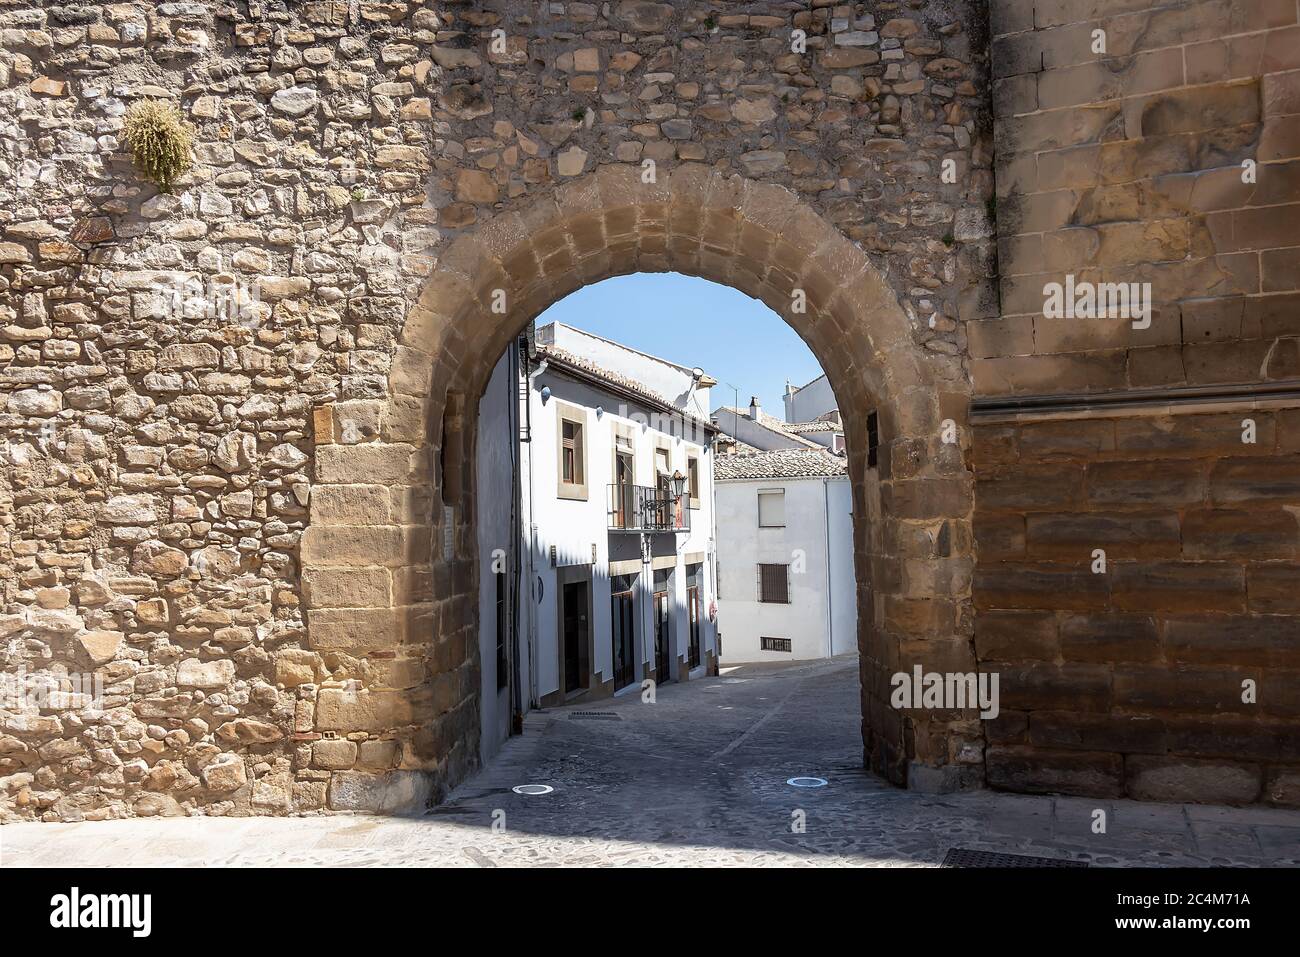 Arco de las Escuelas o de San Leon in street Conde Romanones, Baeza, Jaen province, Andalucia, Spain Stock Photo